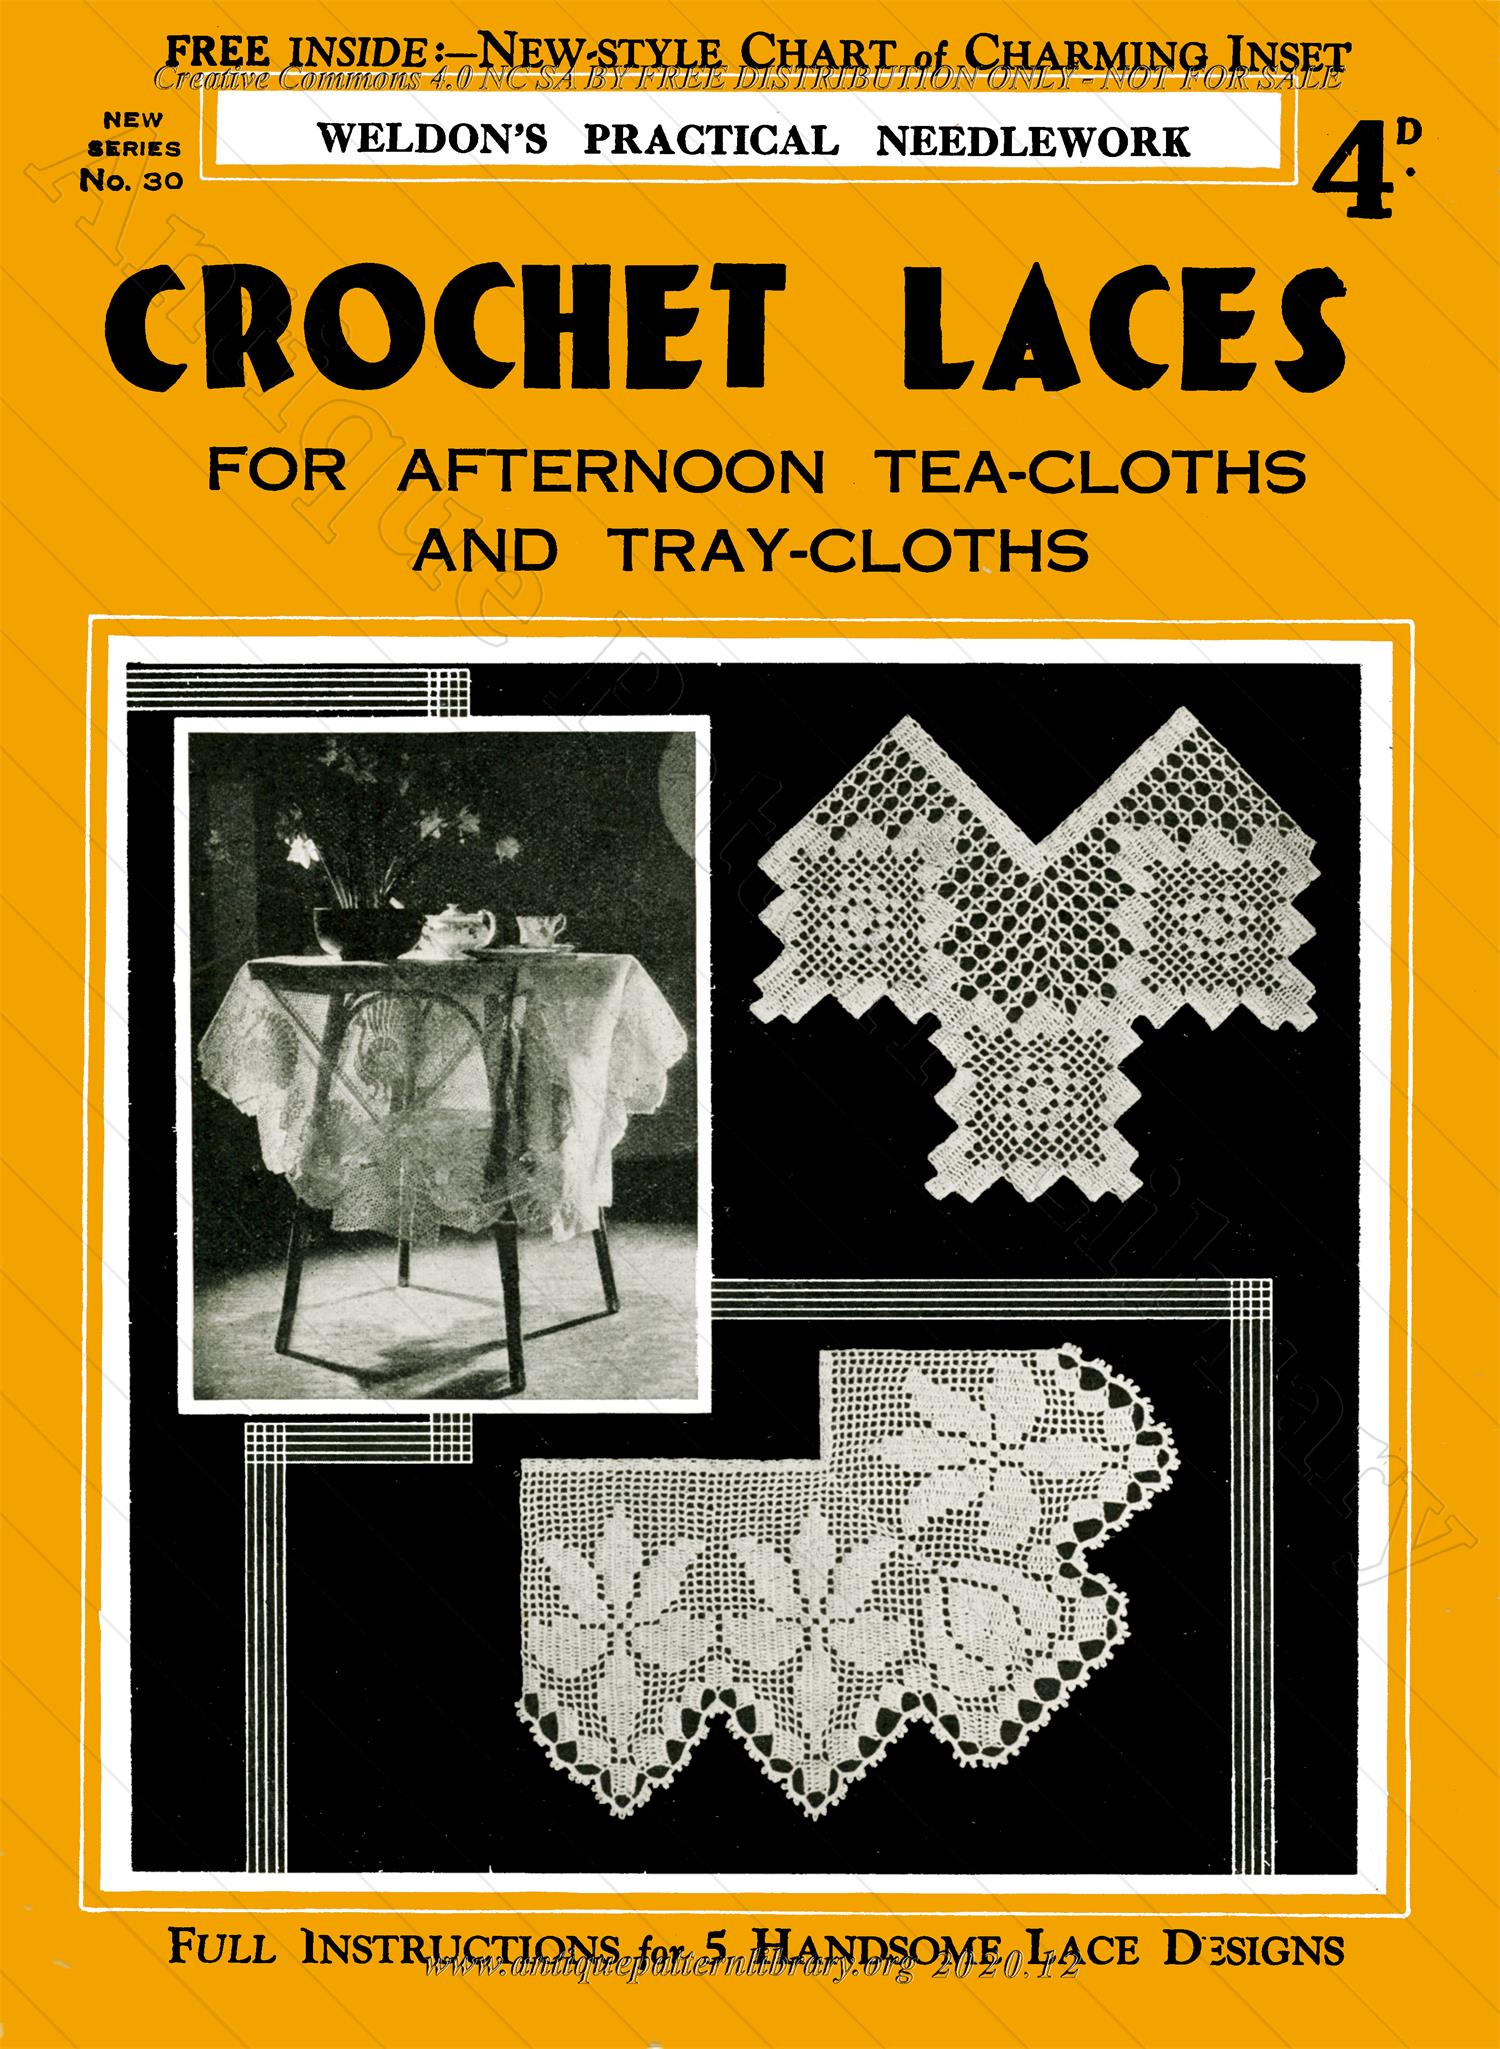 K-PR001 Crochet Laces